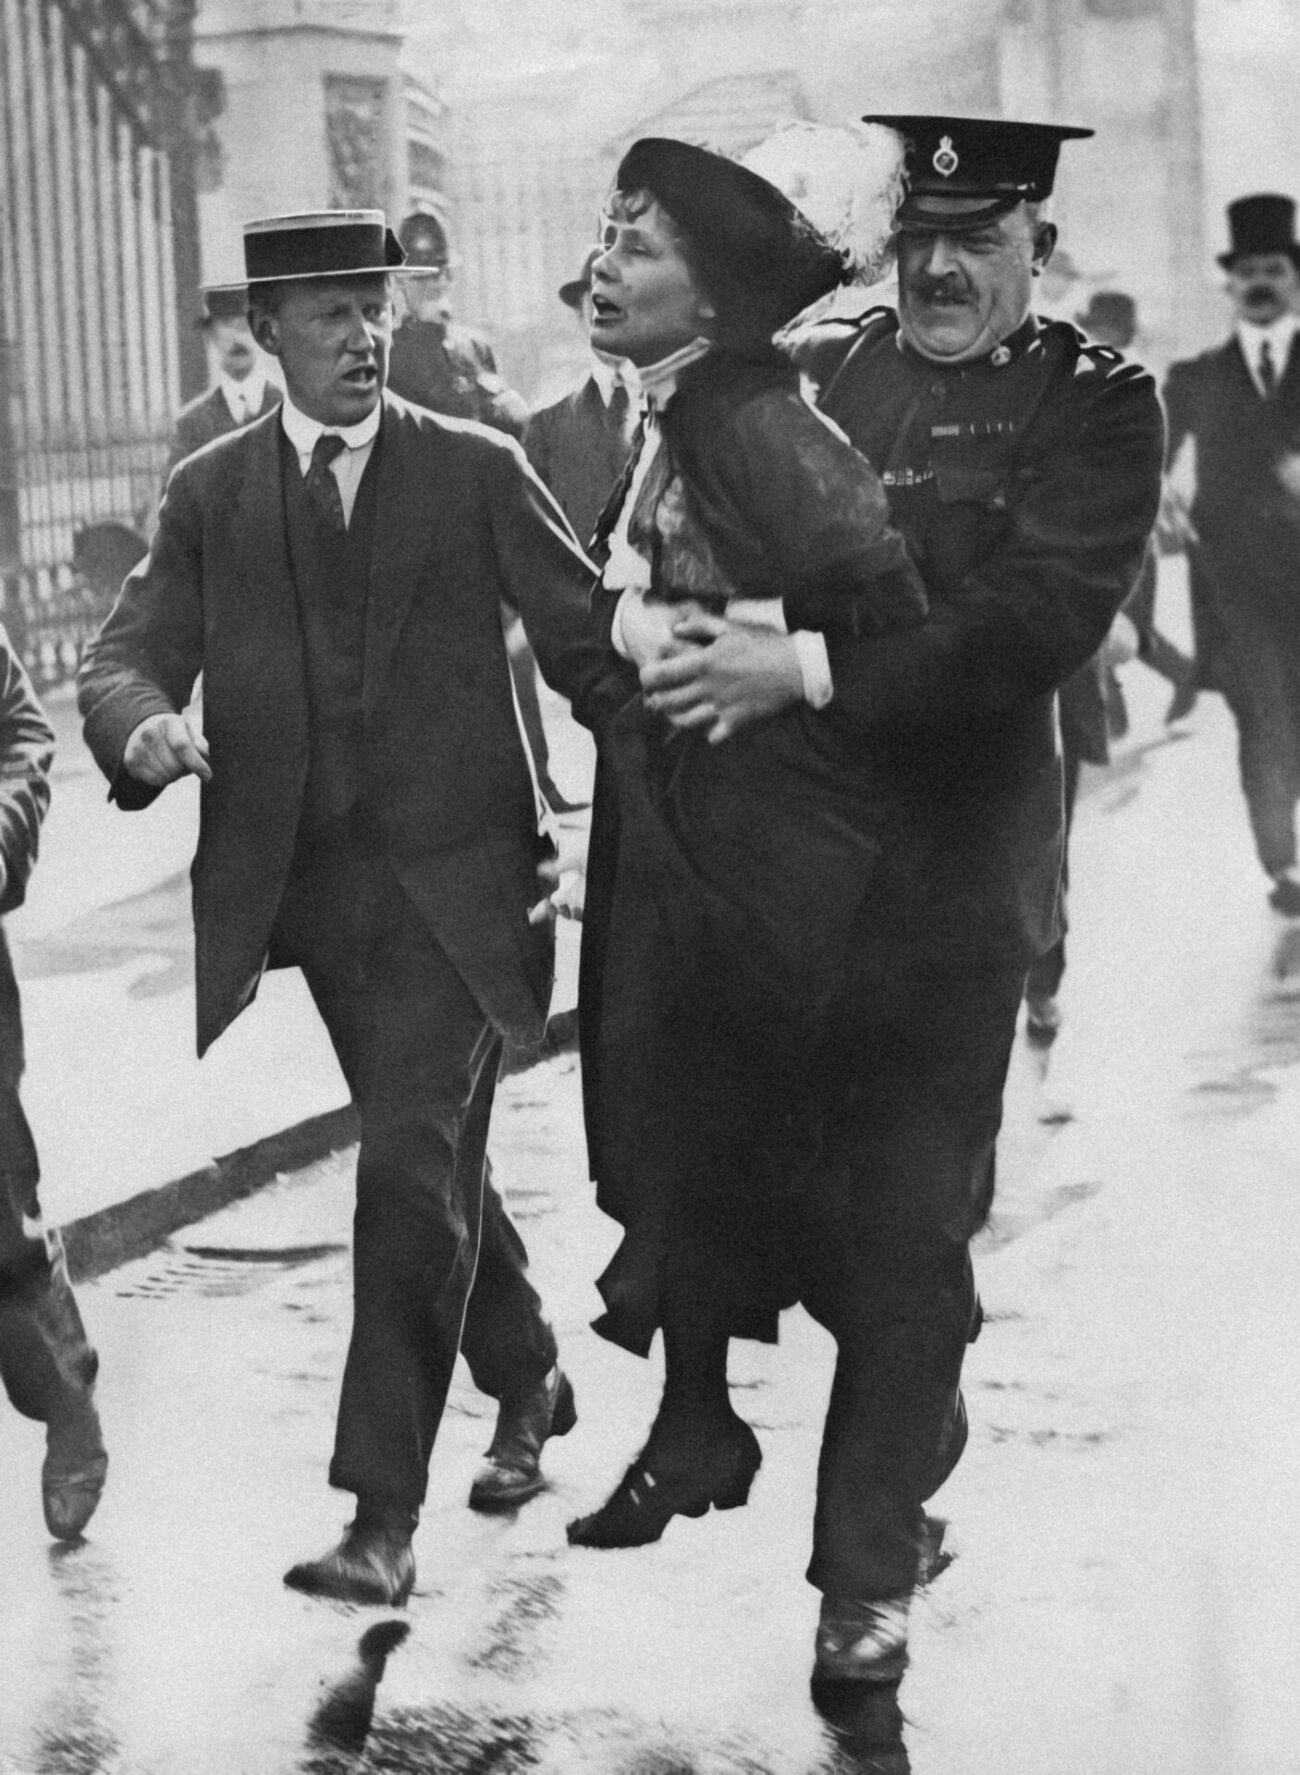 Arrestatie van suffragette Emmeline Pankhurst die door een politieagent wordt weggedragen van het hek van Buckingham Palace tijdens een demonstratie voor vrouwenemancipatie. Londen, Engeland, [1907-1914]